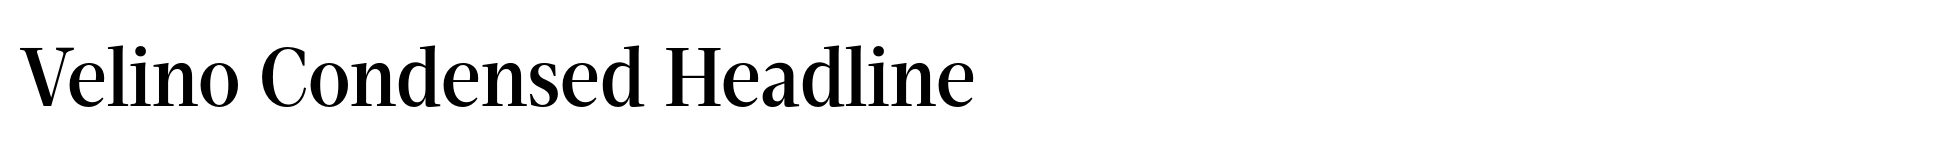 Velino Condensed Headline